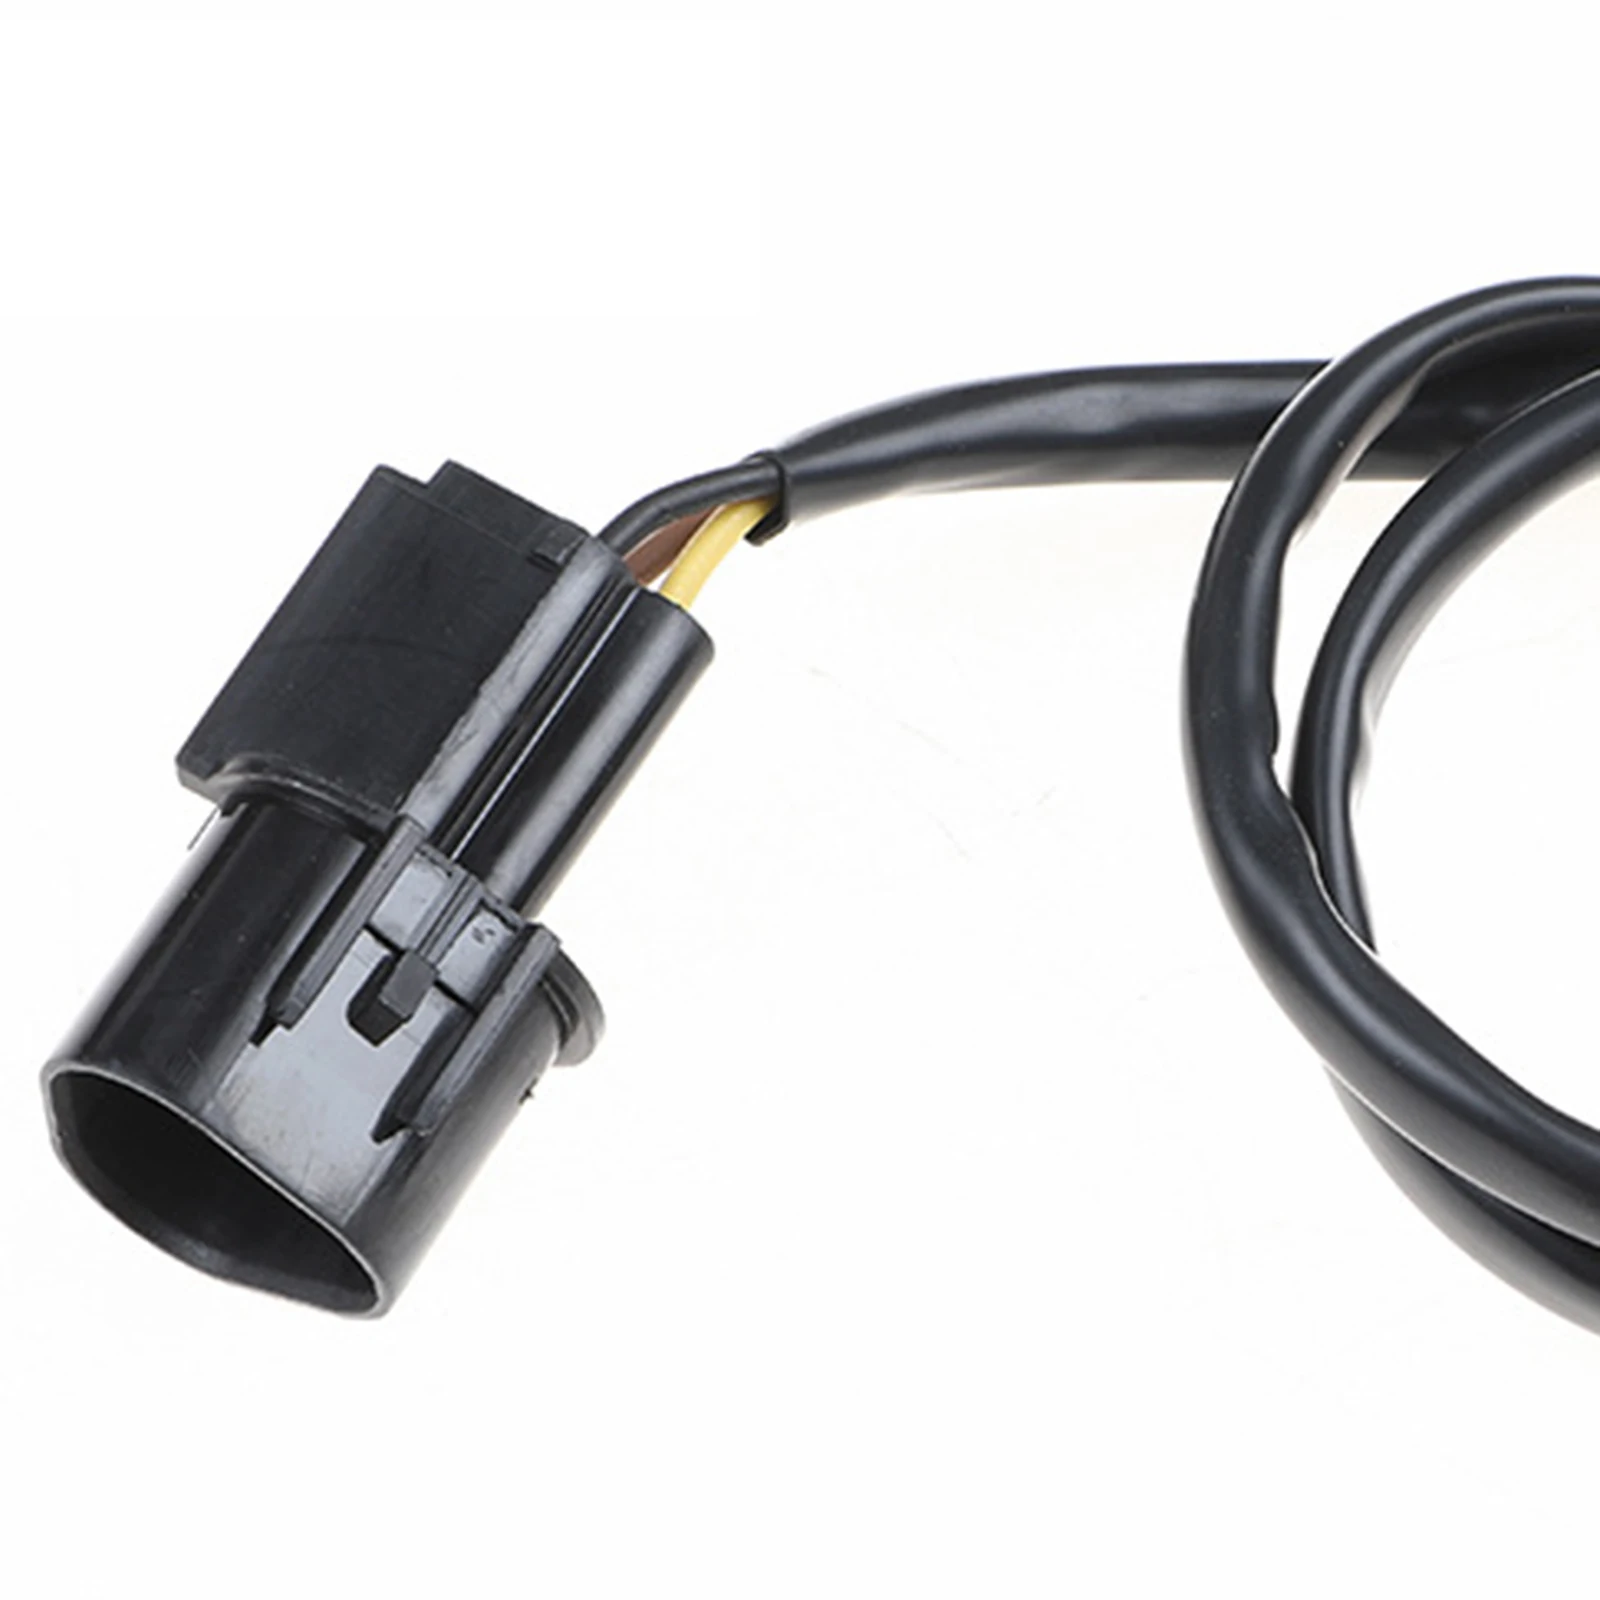 MR985145 Accessories Automotive Durable High Performance  Crank Position Sensor, for   Endeavor